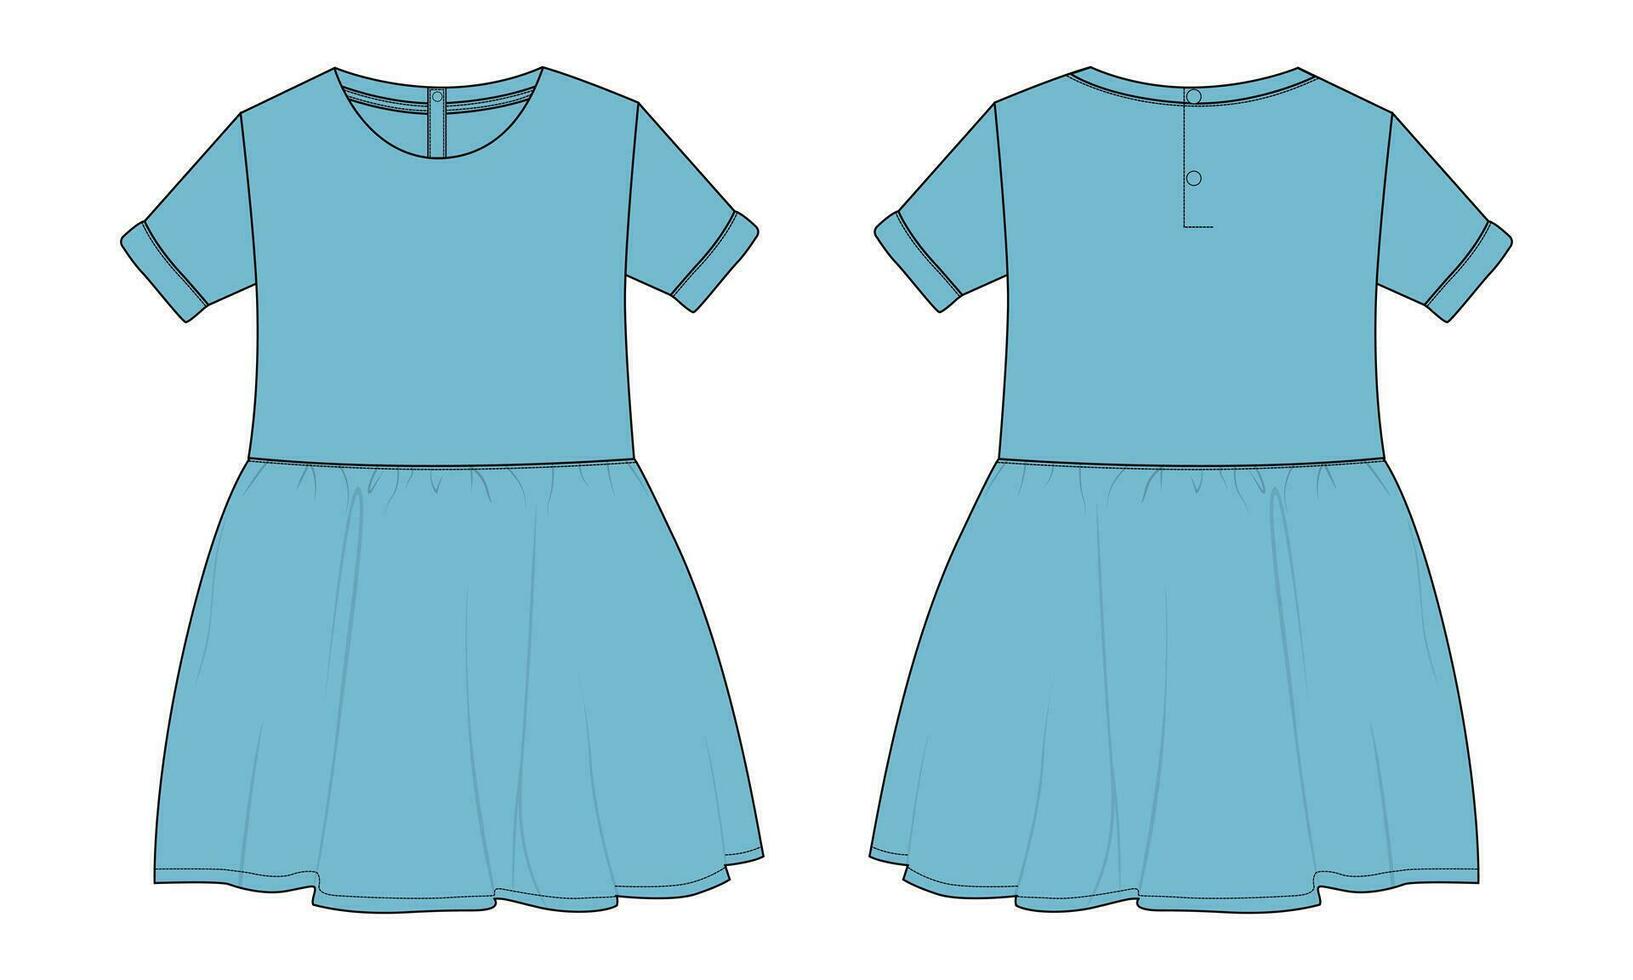 baby meisjes jurk ontwerp technisch vlak schetsen vector illustratie sjabloon. kleding kleding bespotten omhoog voorkant en terug keer bekeken